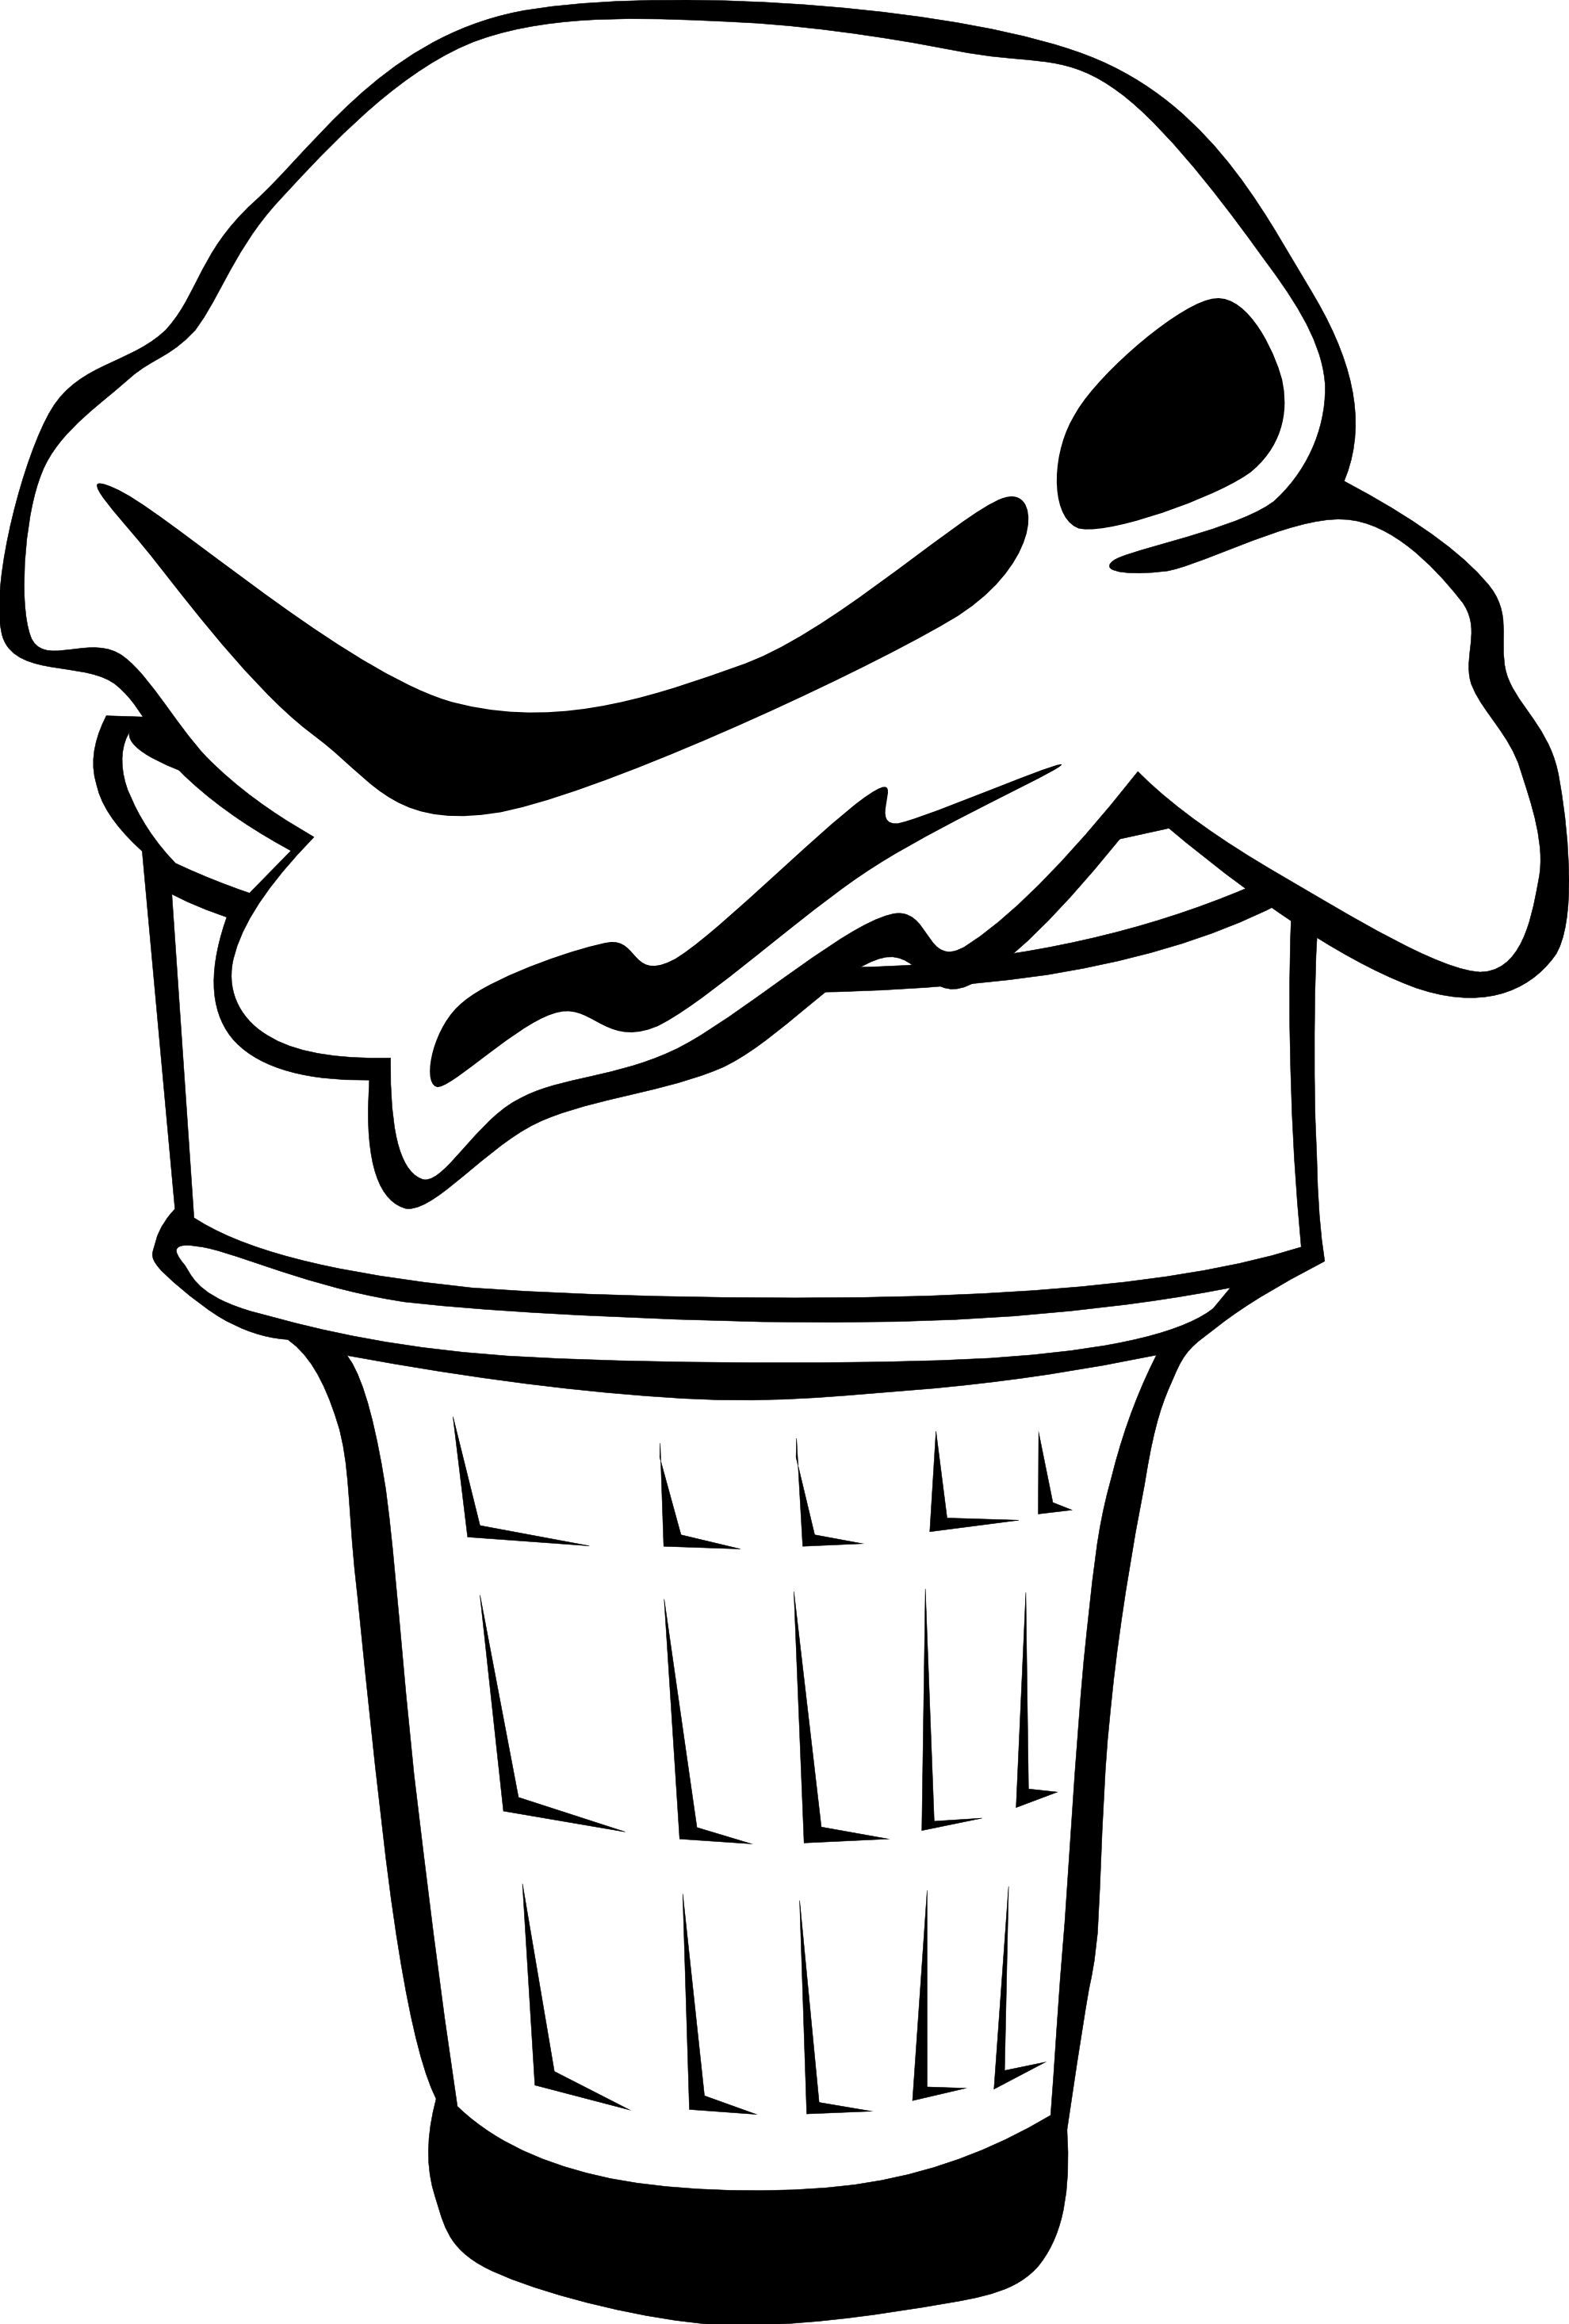 Black And White Ice Cream Cone Clipart - Free ...